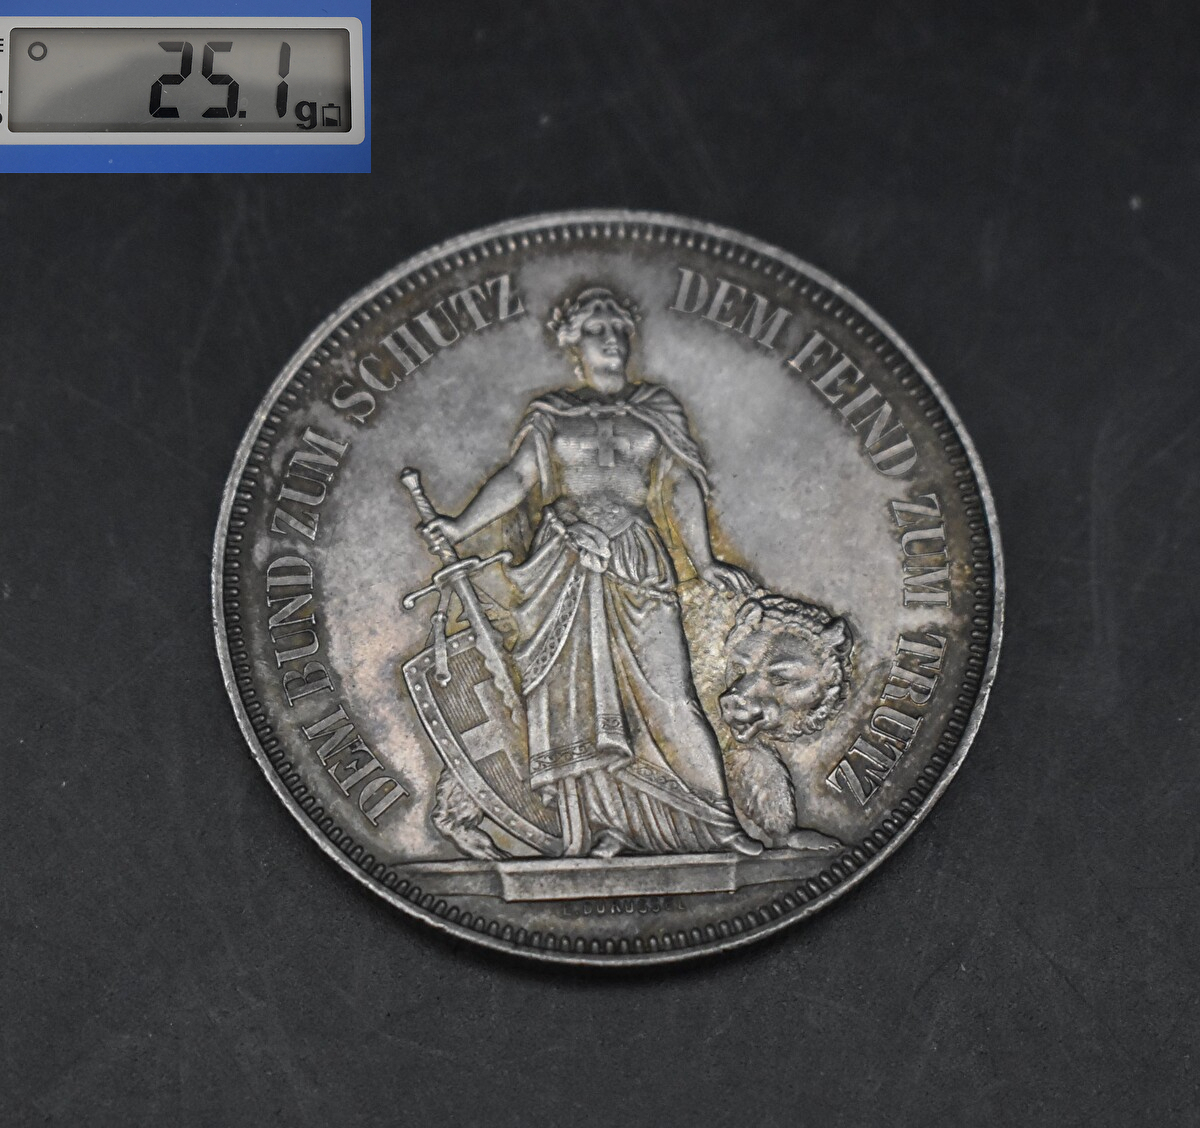 W5-96 【現状品】 スイス ベルン 射撃祭記念 5フラン 銀貨 1885年 古銭 硬貨 アンティークコイン 当時物 重さ約25.1g_画像1